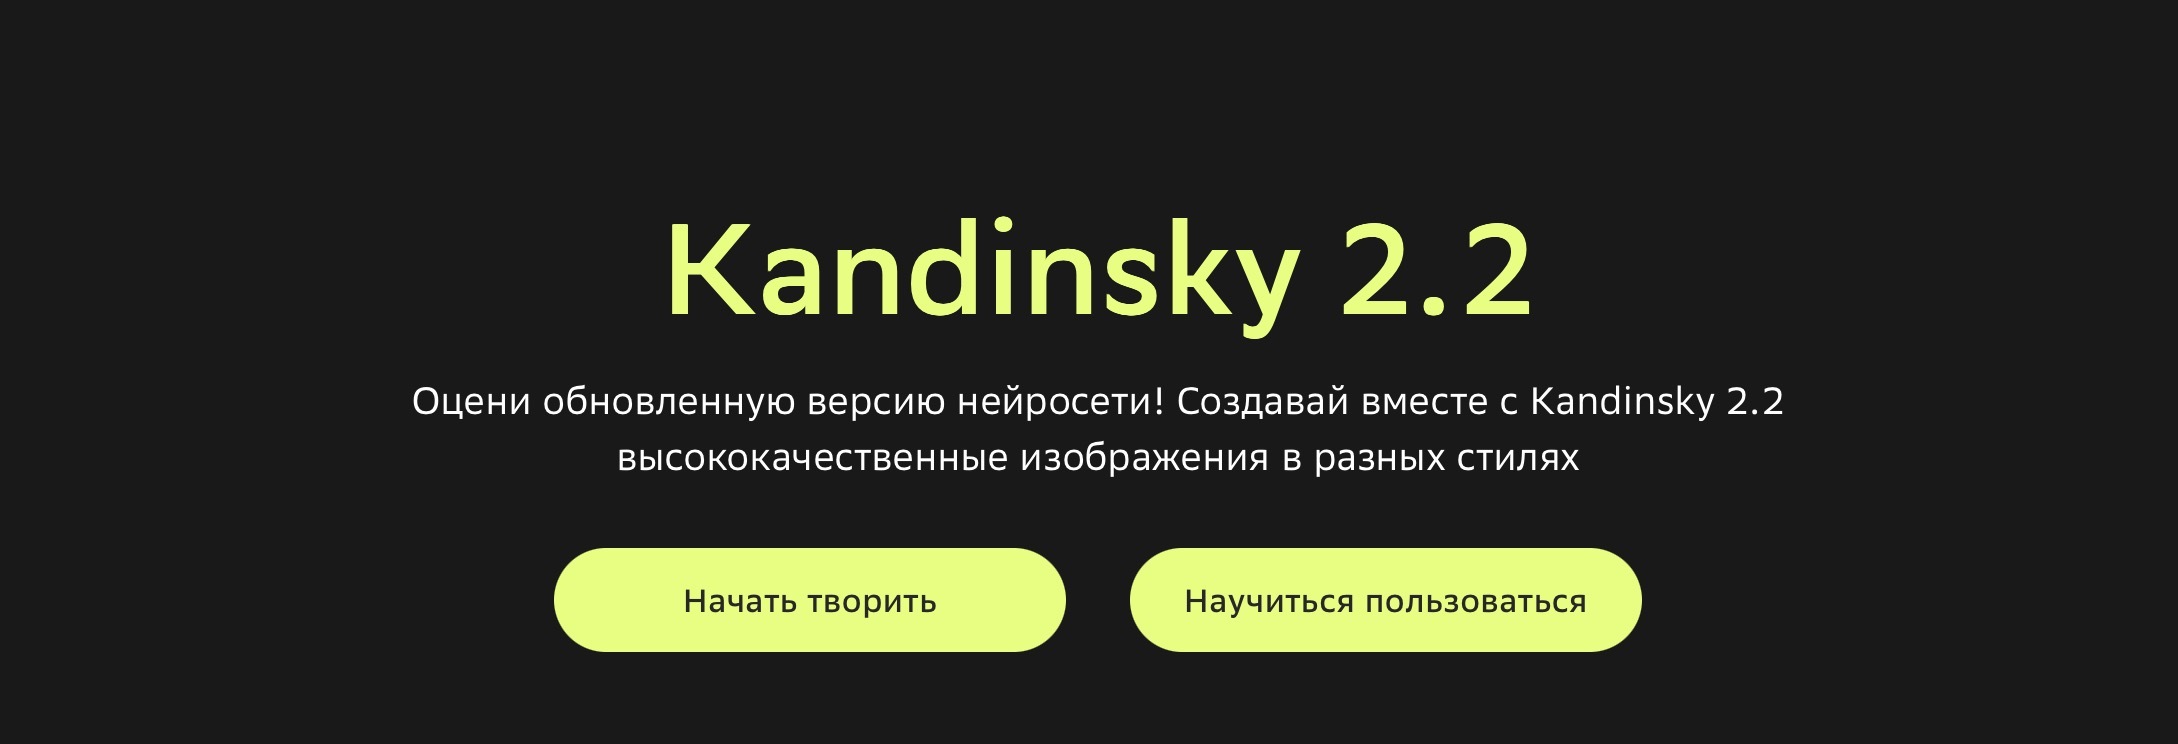 Пользователи ИИ-платформы Kandinsky получили возможность генерировать видеоролики